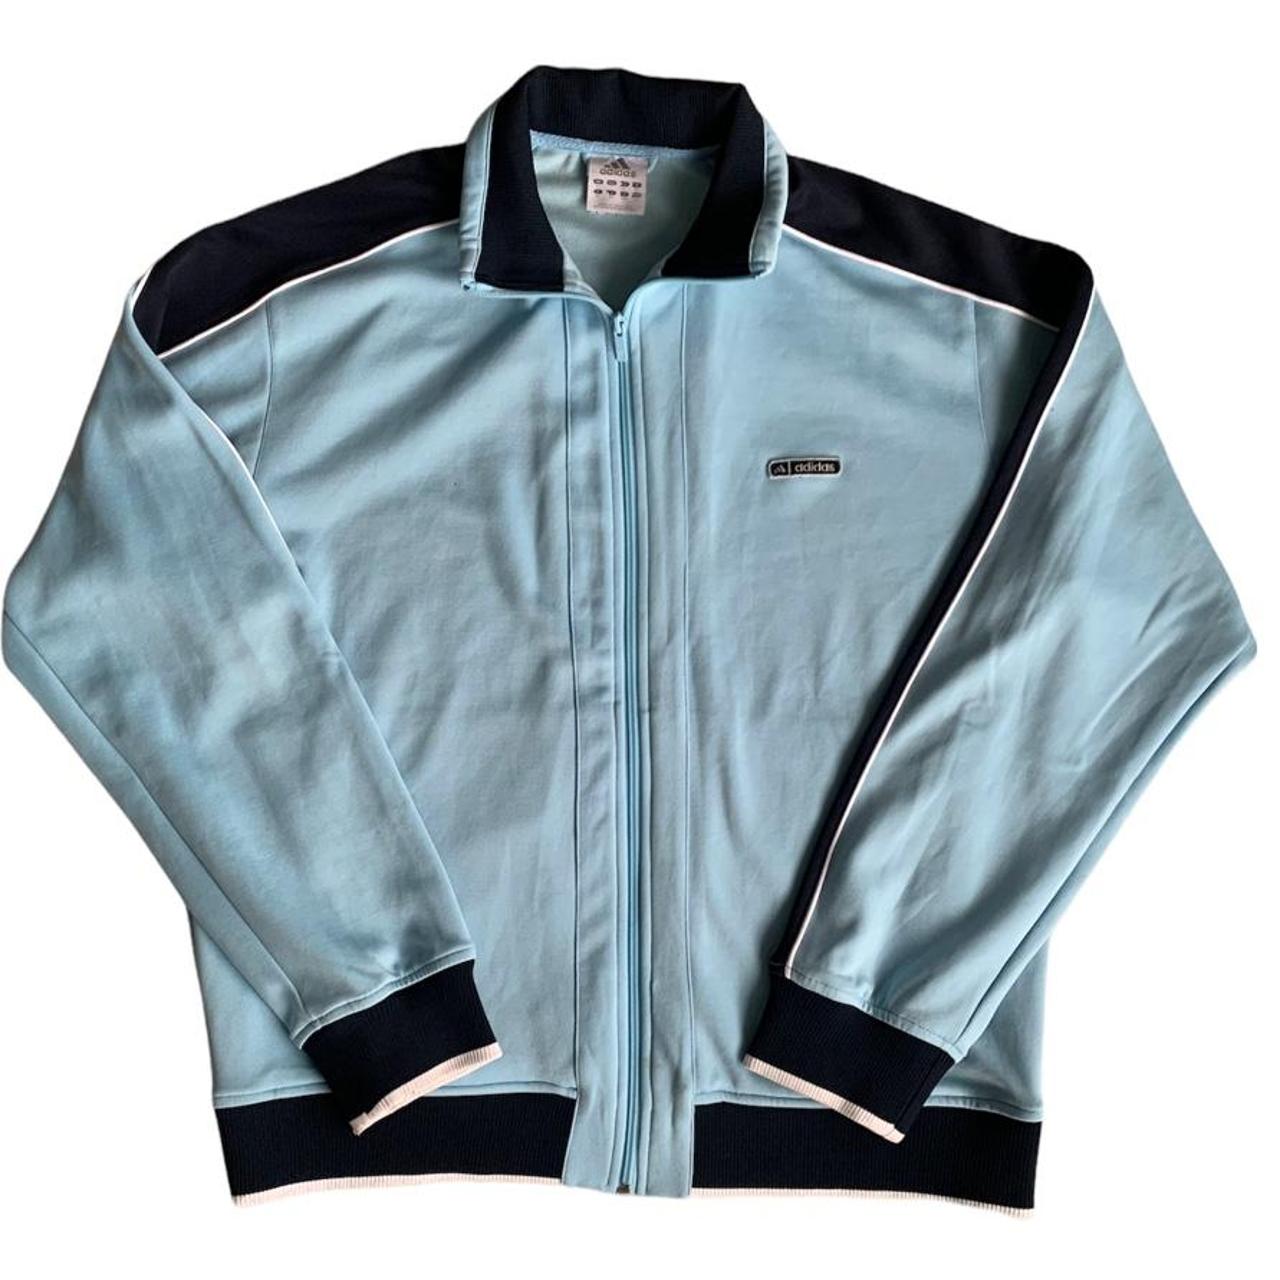 Adidas - Vintage Track Jacket in Light Blue. Size:... - Depop